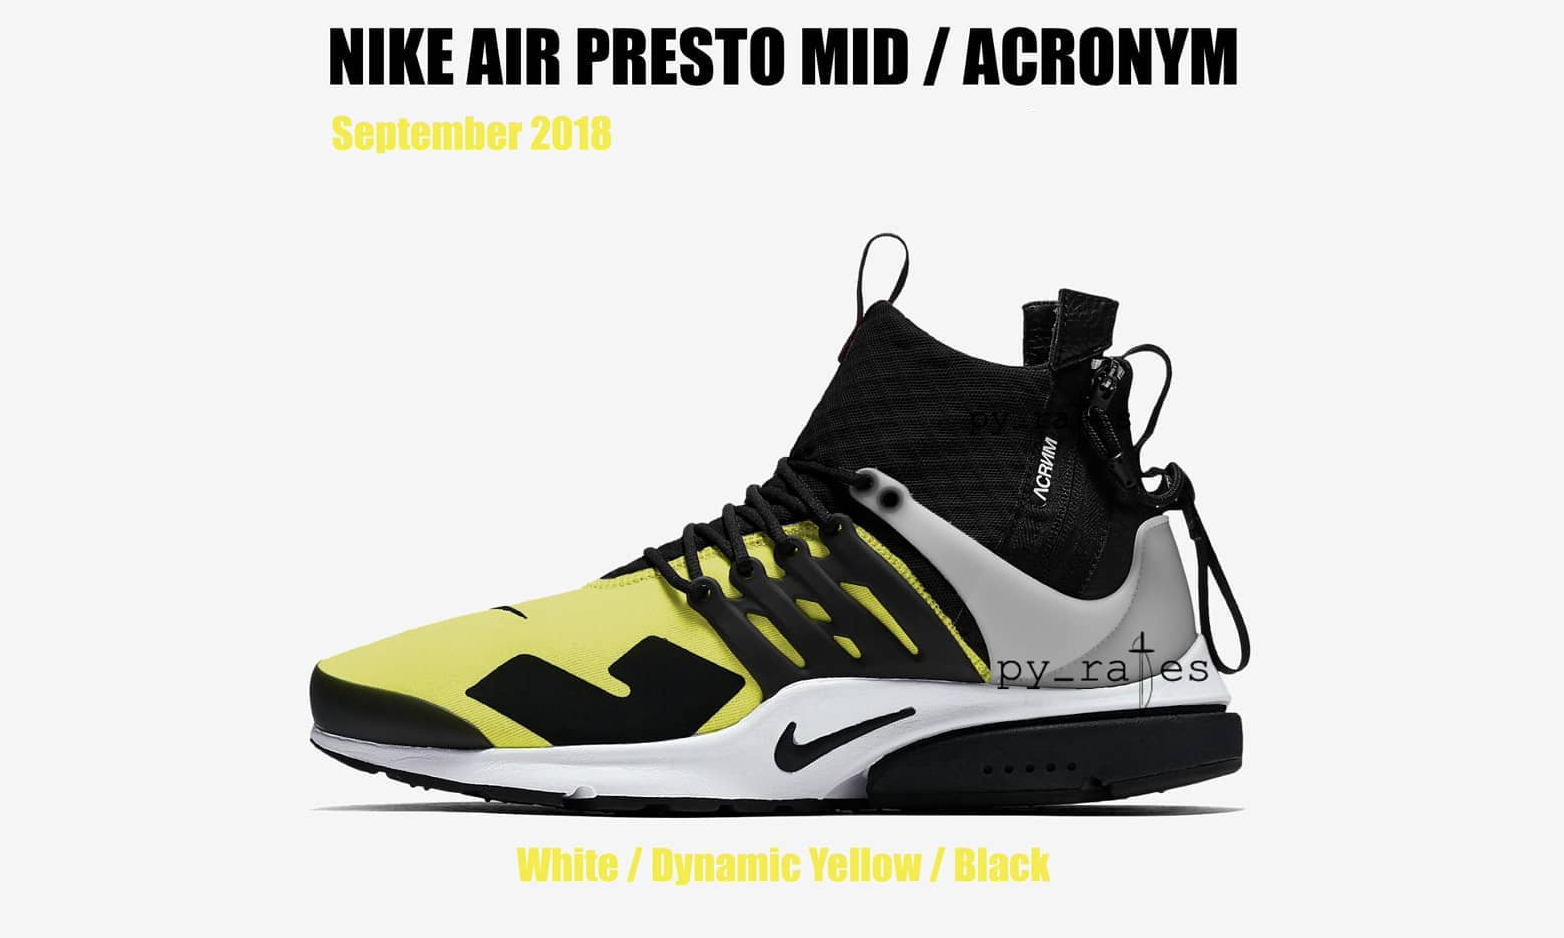 ACRONYM® x NikeLab 或将于 9 月再次发售新配色 Air Presto Mid